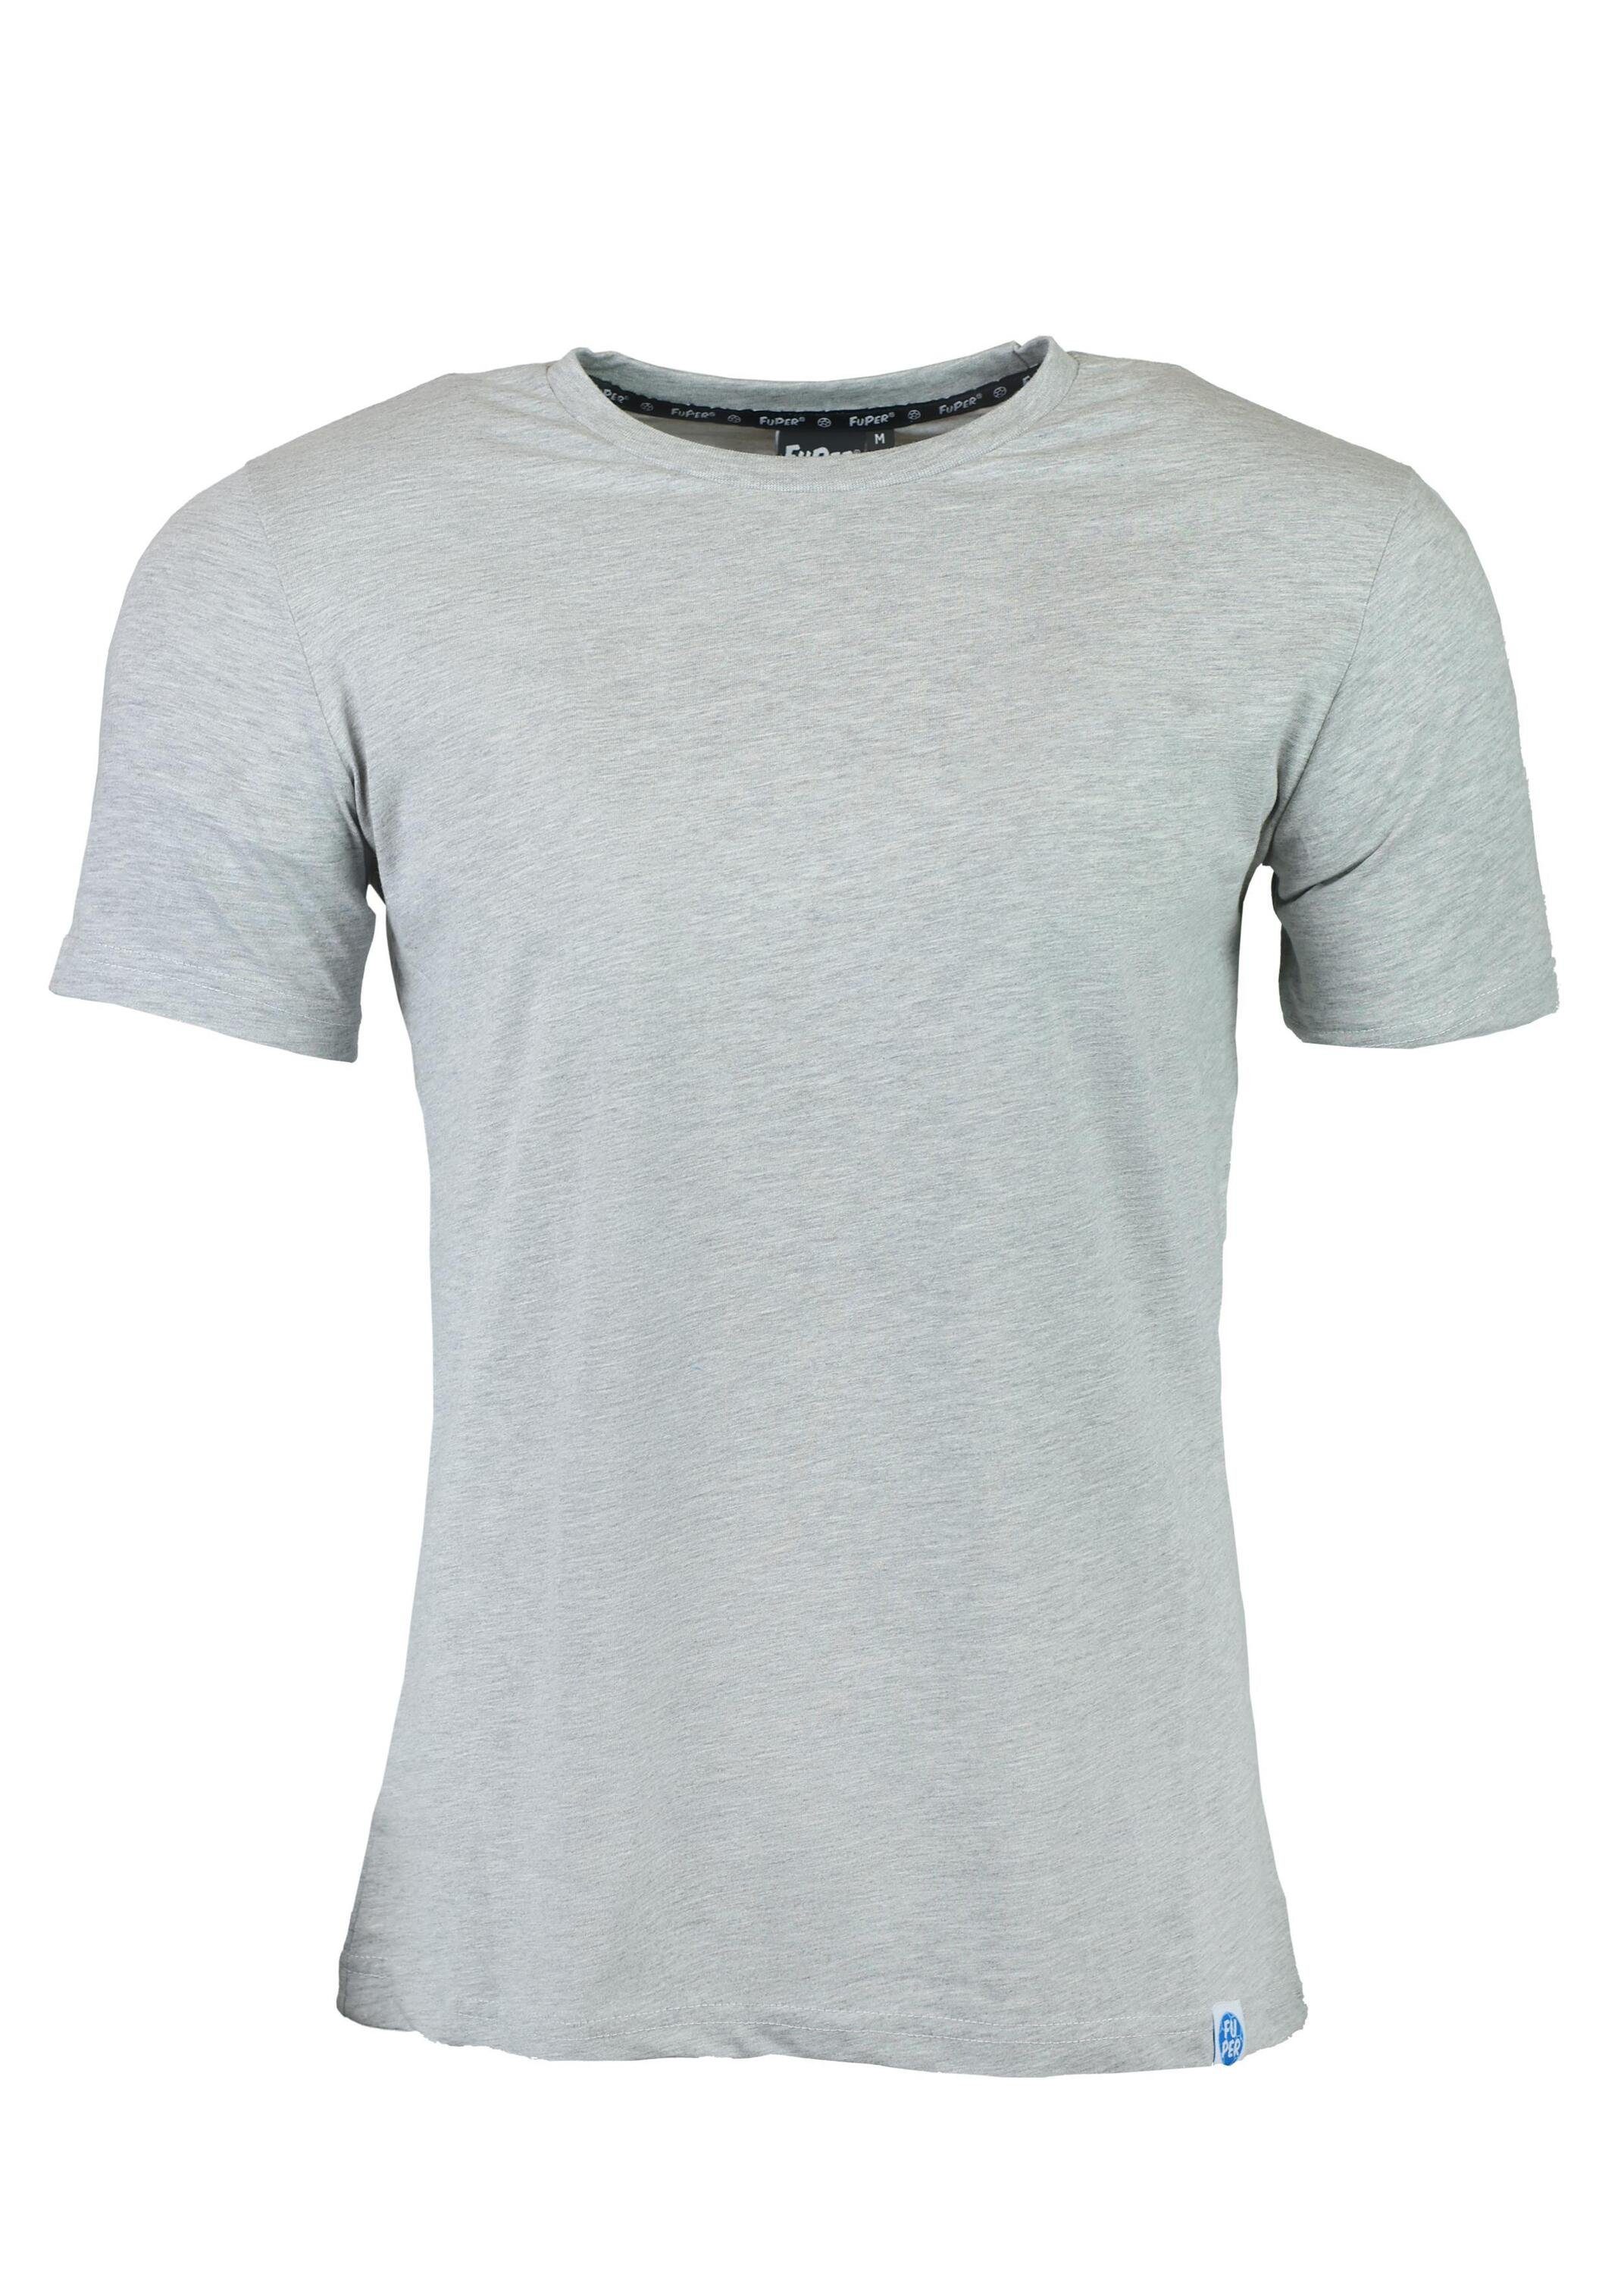 FuPer T-Shirt Karl und Grey Herren, Sport aus für Baumwolle Lifestyle für